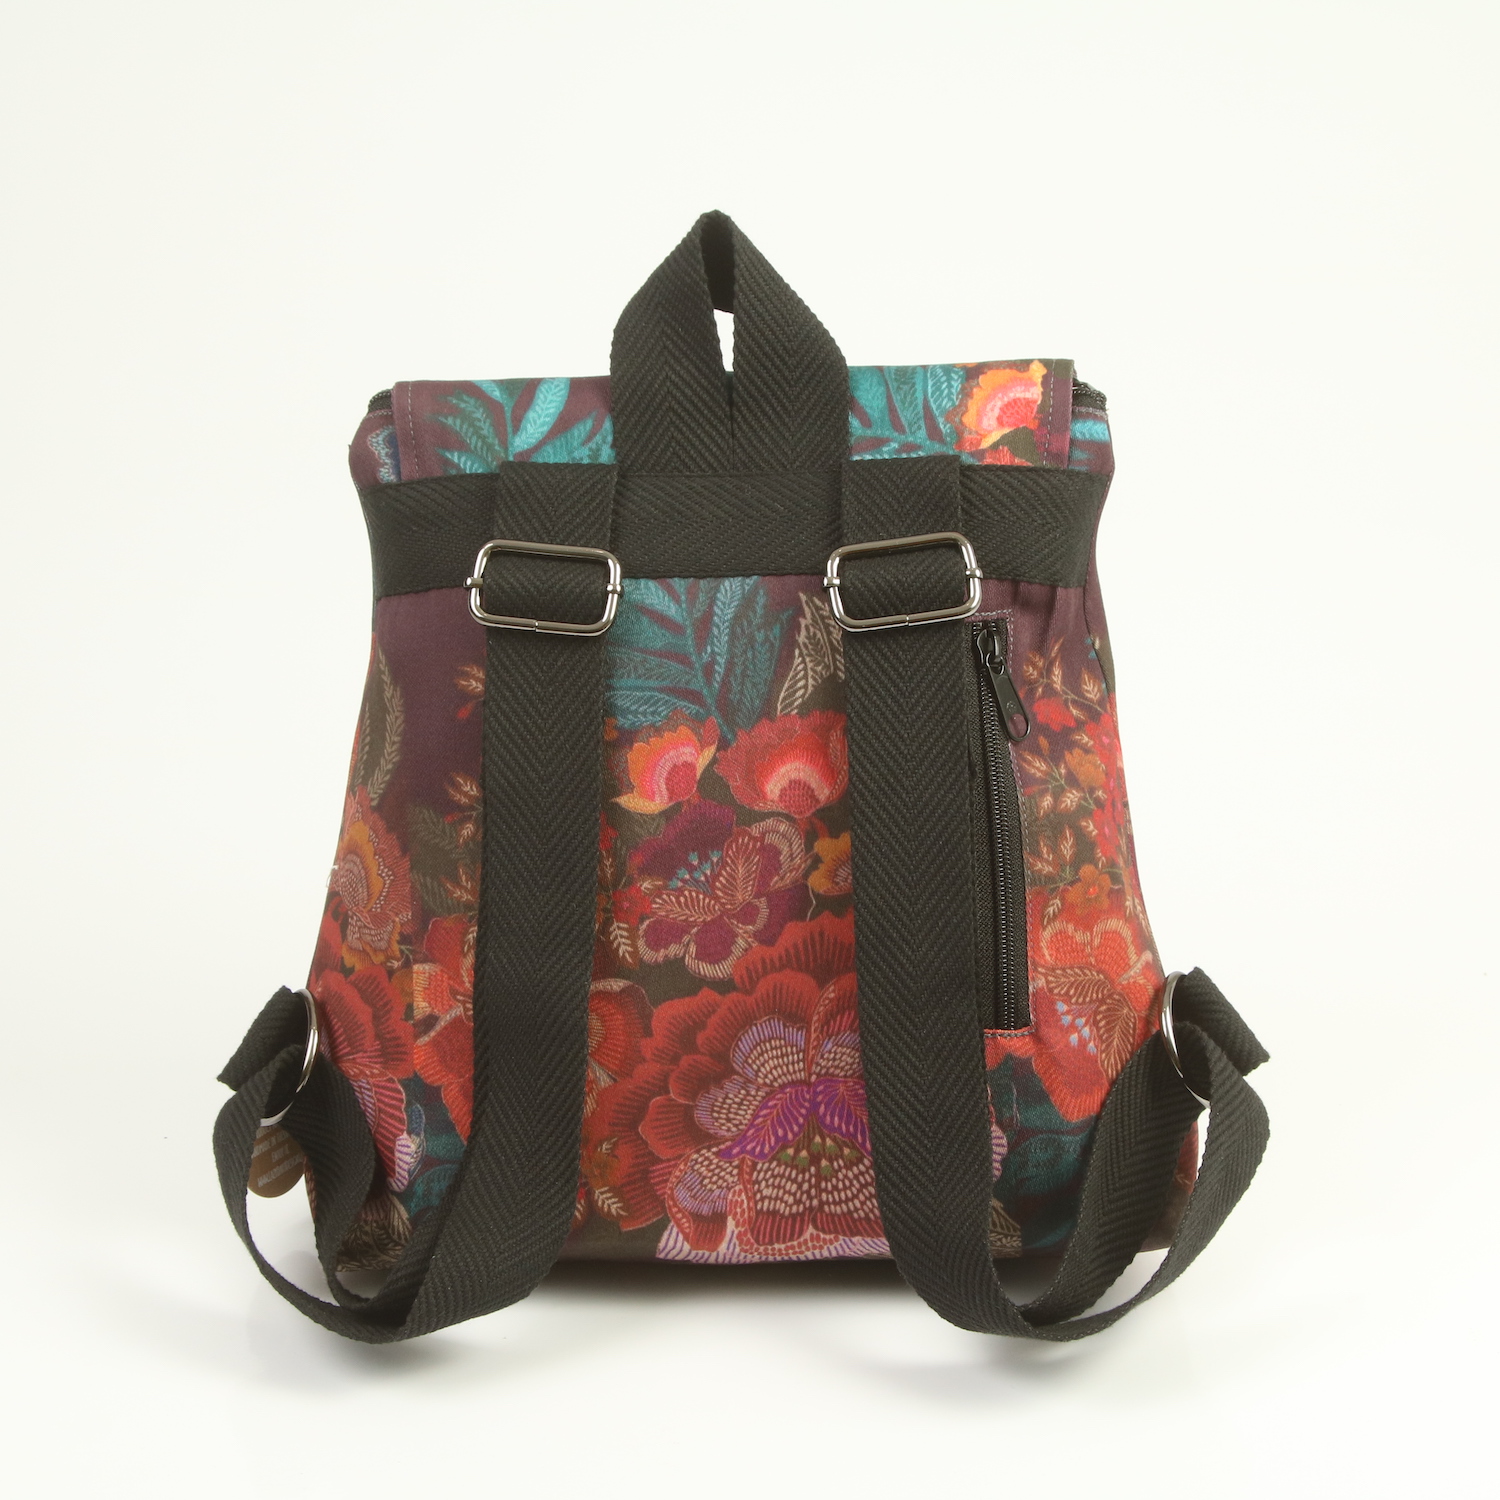 LazyDayz-Designs-Backpack-γυναικείος-σάκος-πλάτης-χειροποίητος bb0303c